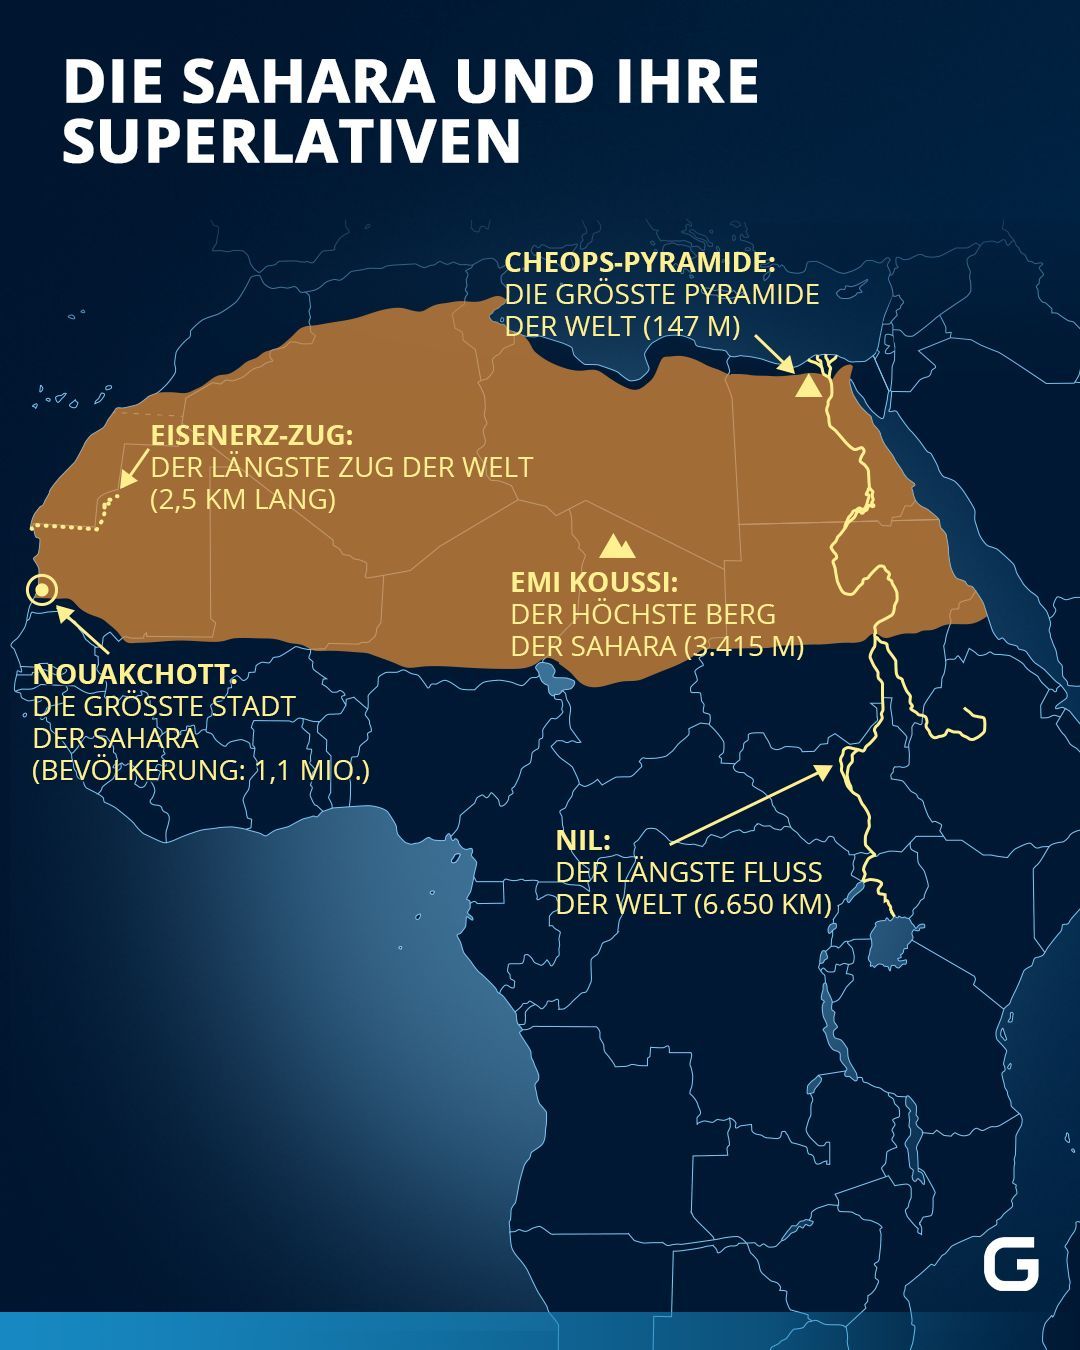 Die spannendsten Fakten über die Sahara